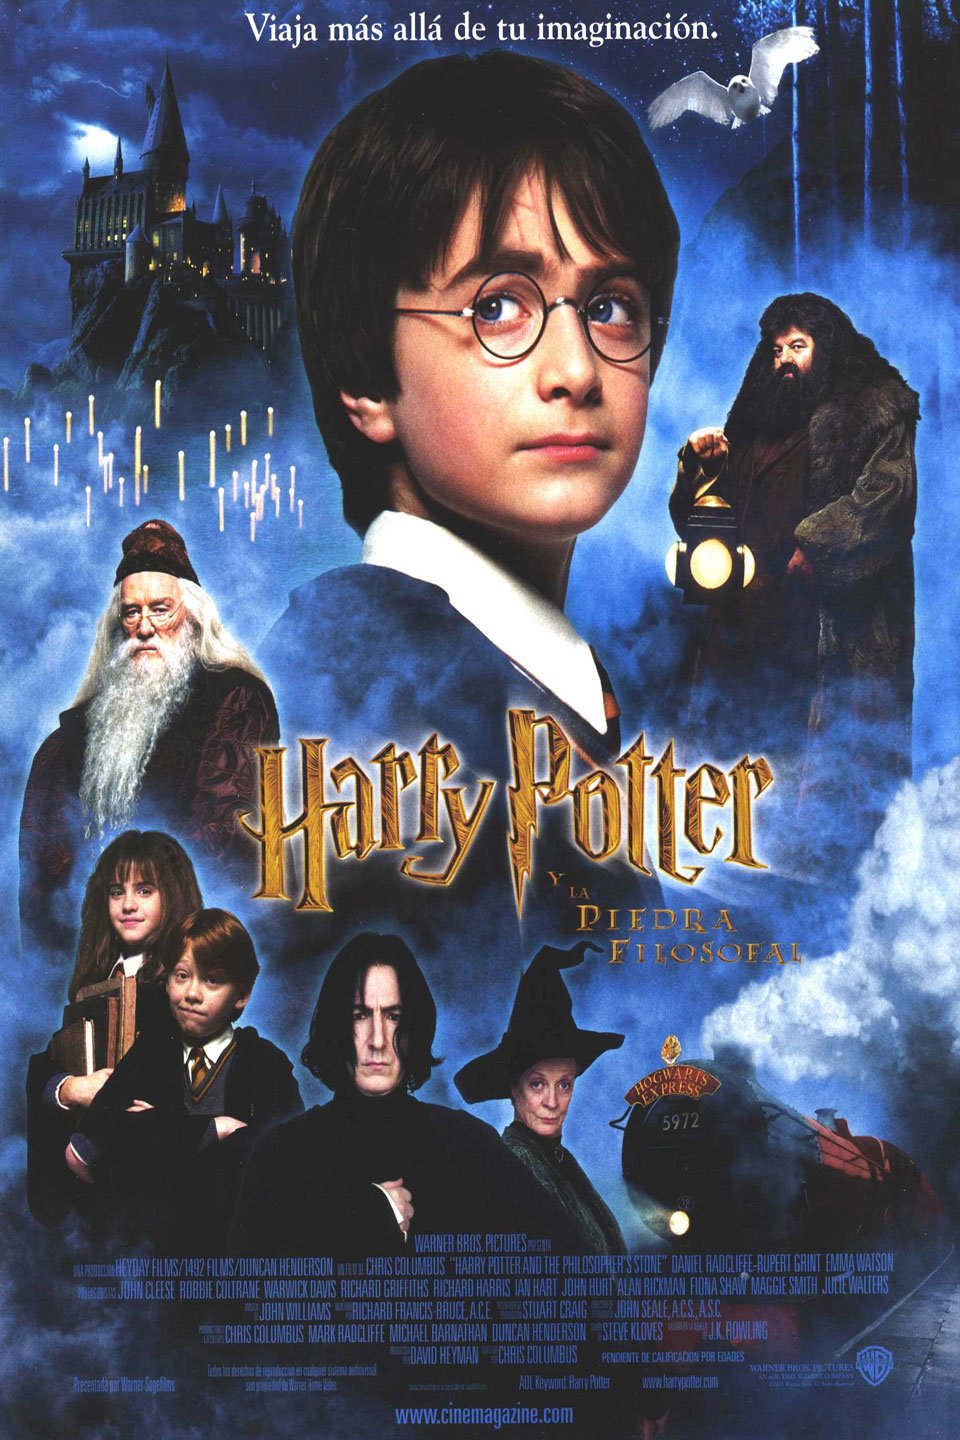 Injerto loto Vagabundo Harry Potter y la Piedra Filosofal : Fotos y carteles - SensaCine.com